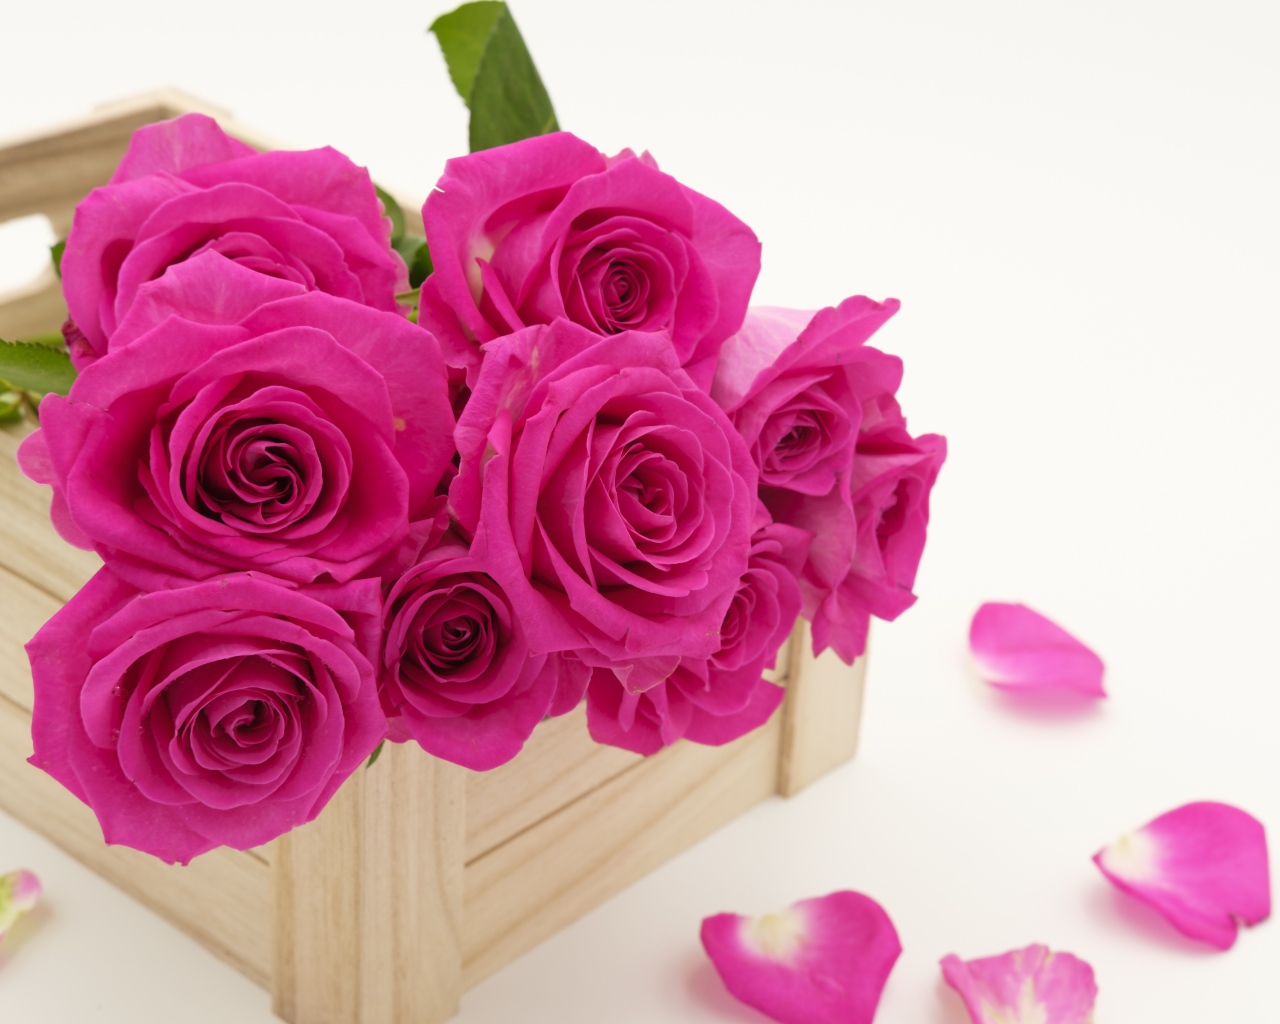 Букет розовых роз в деревянном ящике